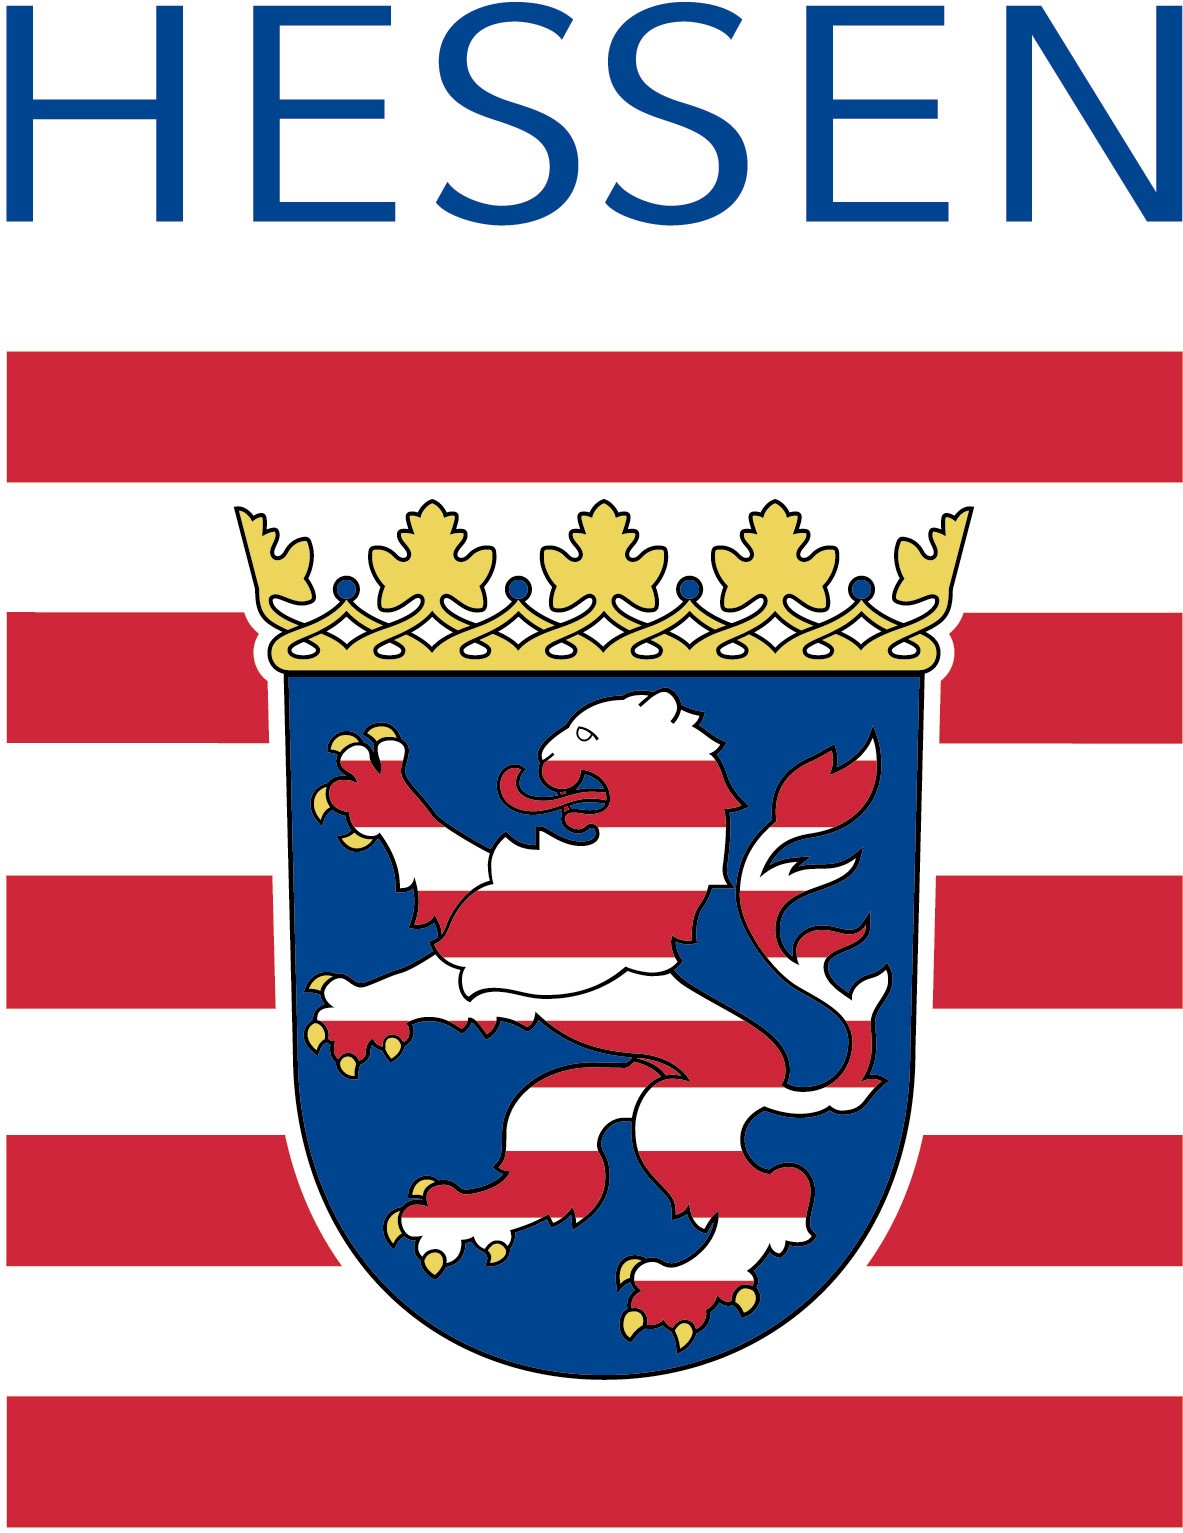 Wappen des Landes Hessen. Das Bild dient als Navigationselement und führt zum vollständigen Artikel.